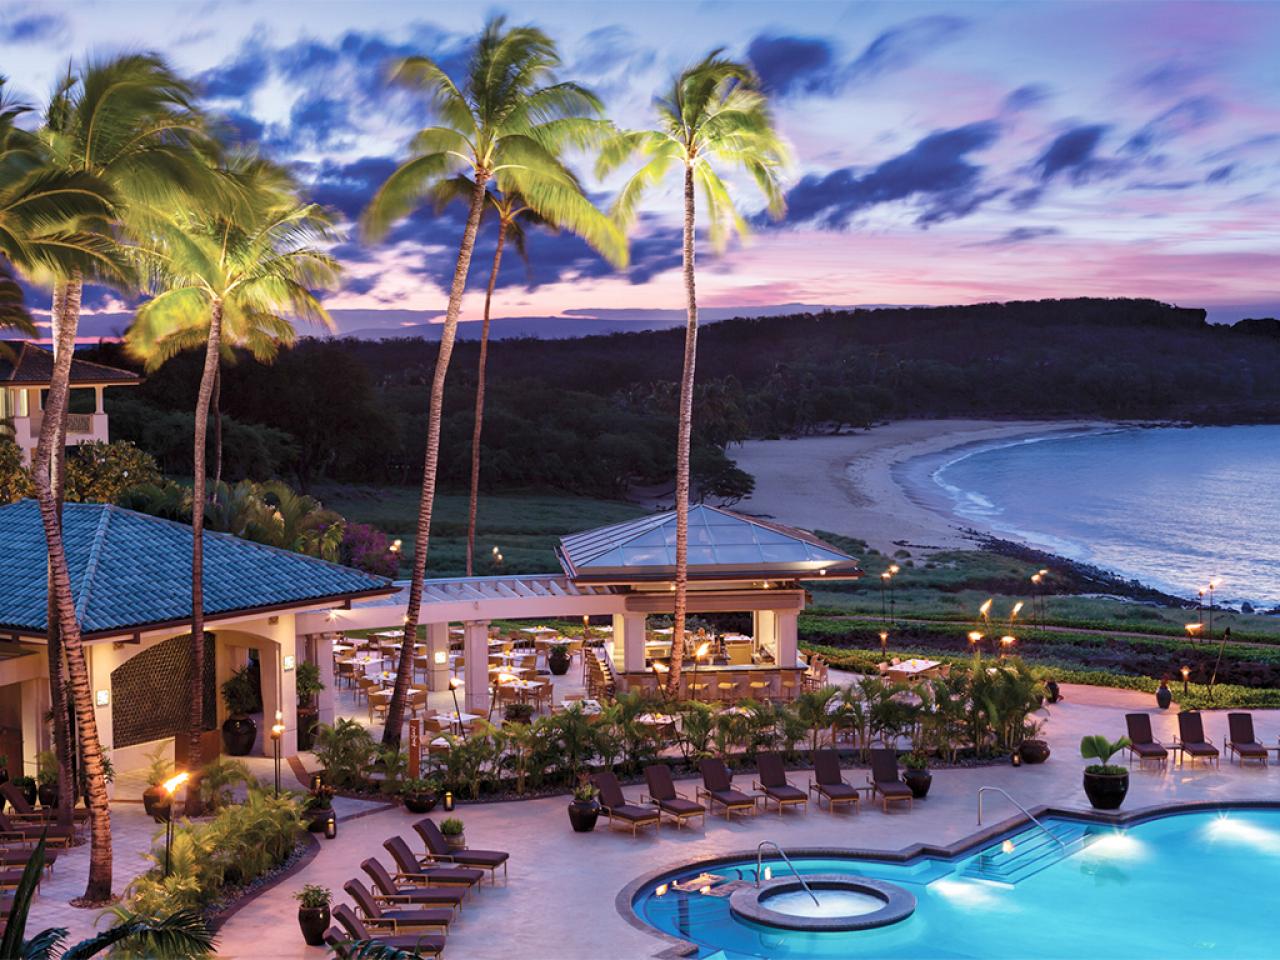 A beach resort in Lanai, Hawaii